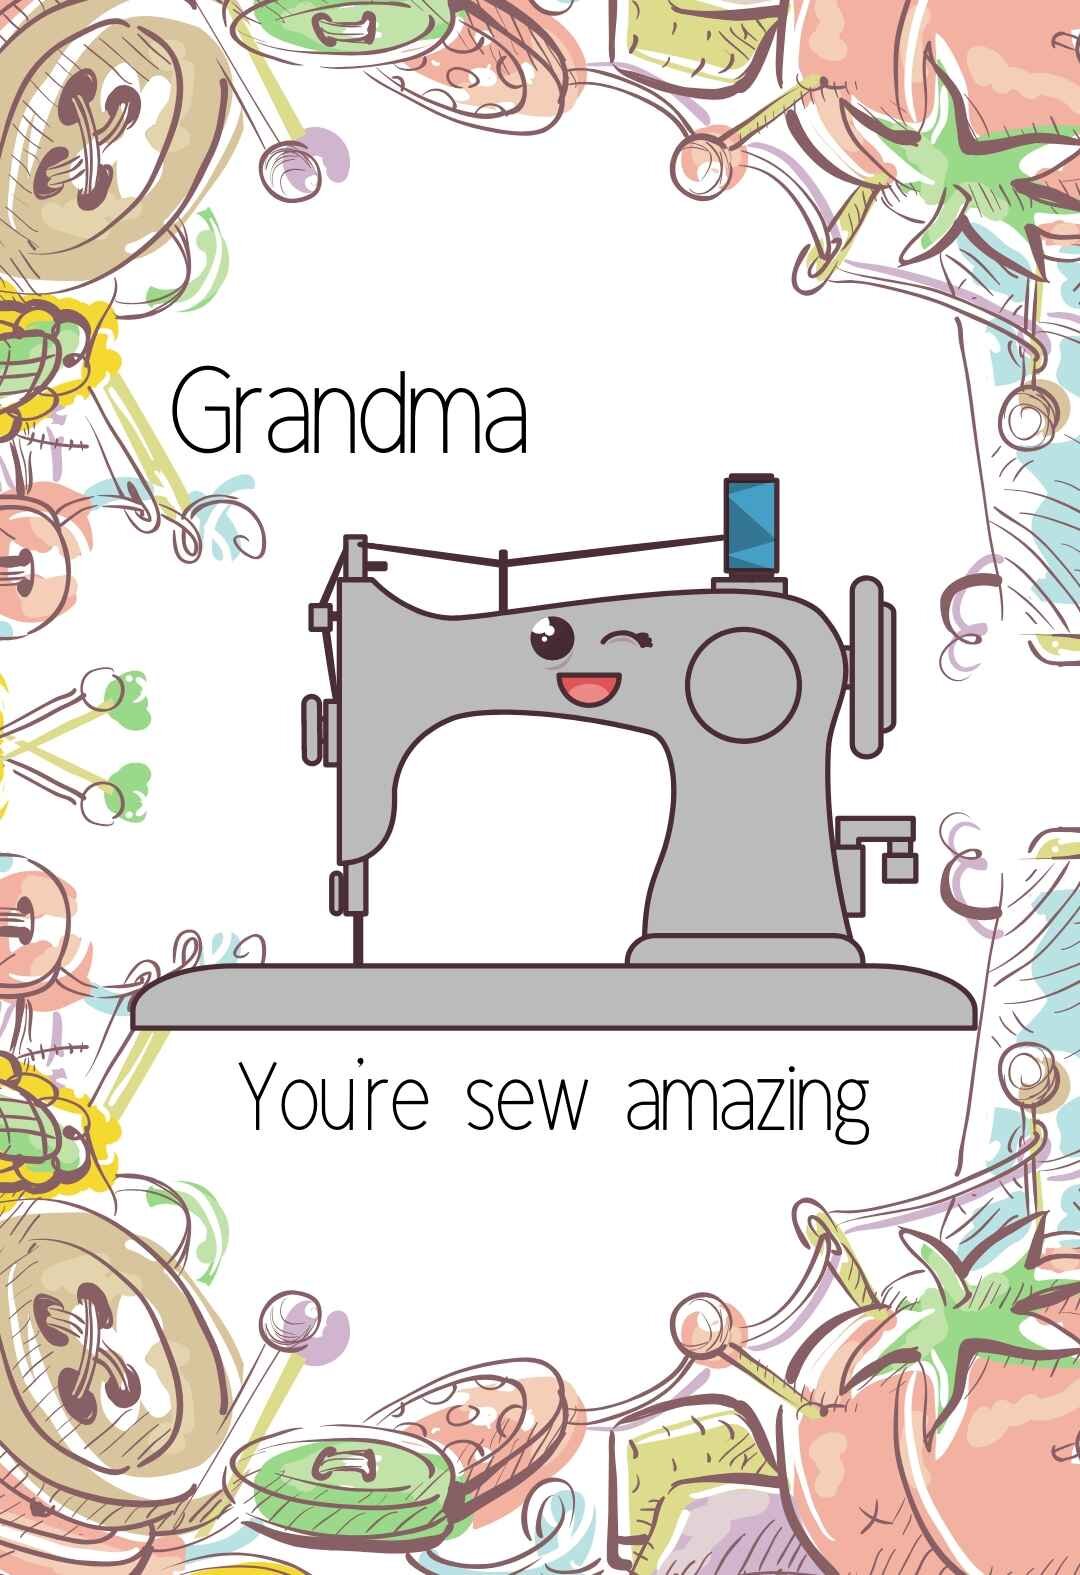 Hey ya grandma